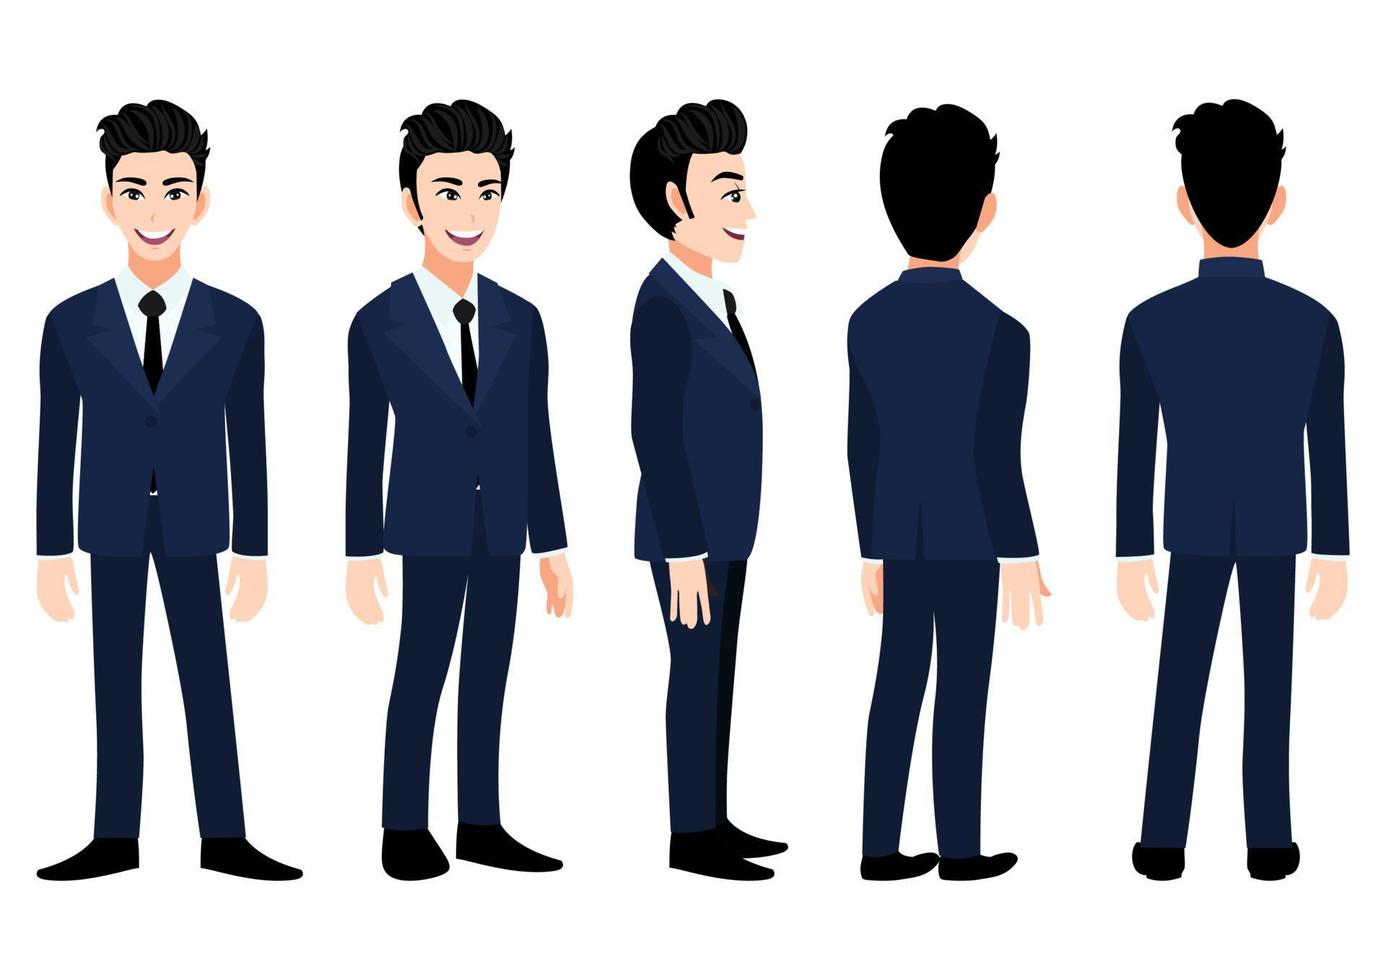 personaje de dibujos animados con hombre de negocios en un traje azul para animación. personaje animado de vista frontal, lateral, posterior, 3-4. ilustración vectorial plana. vector